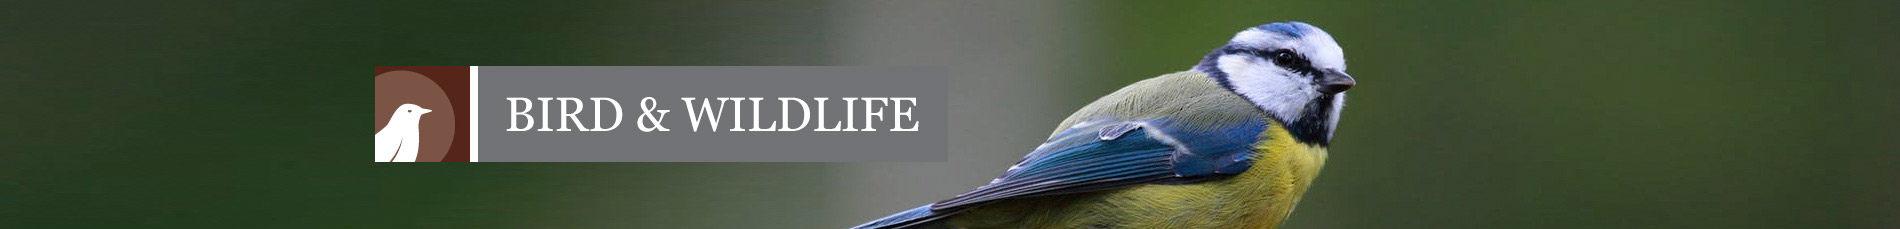 Bird & Wildlife Banner